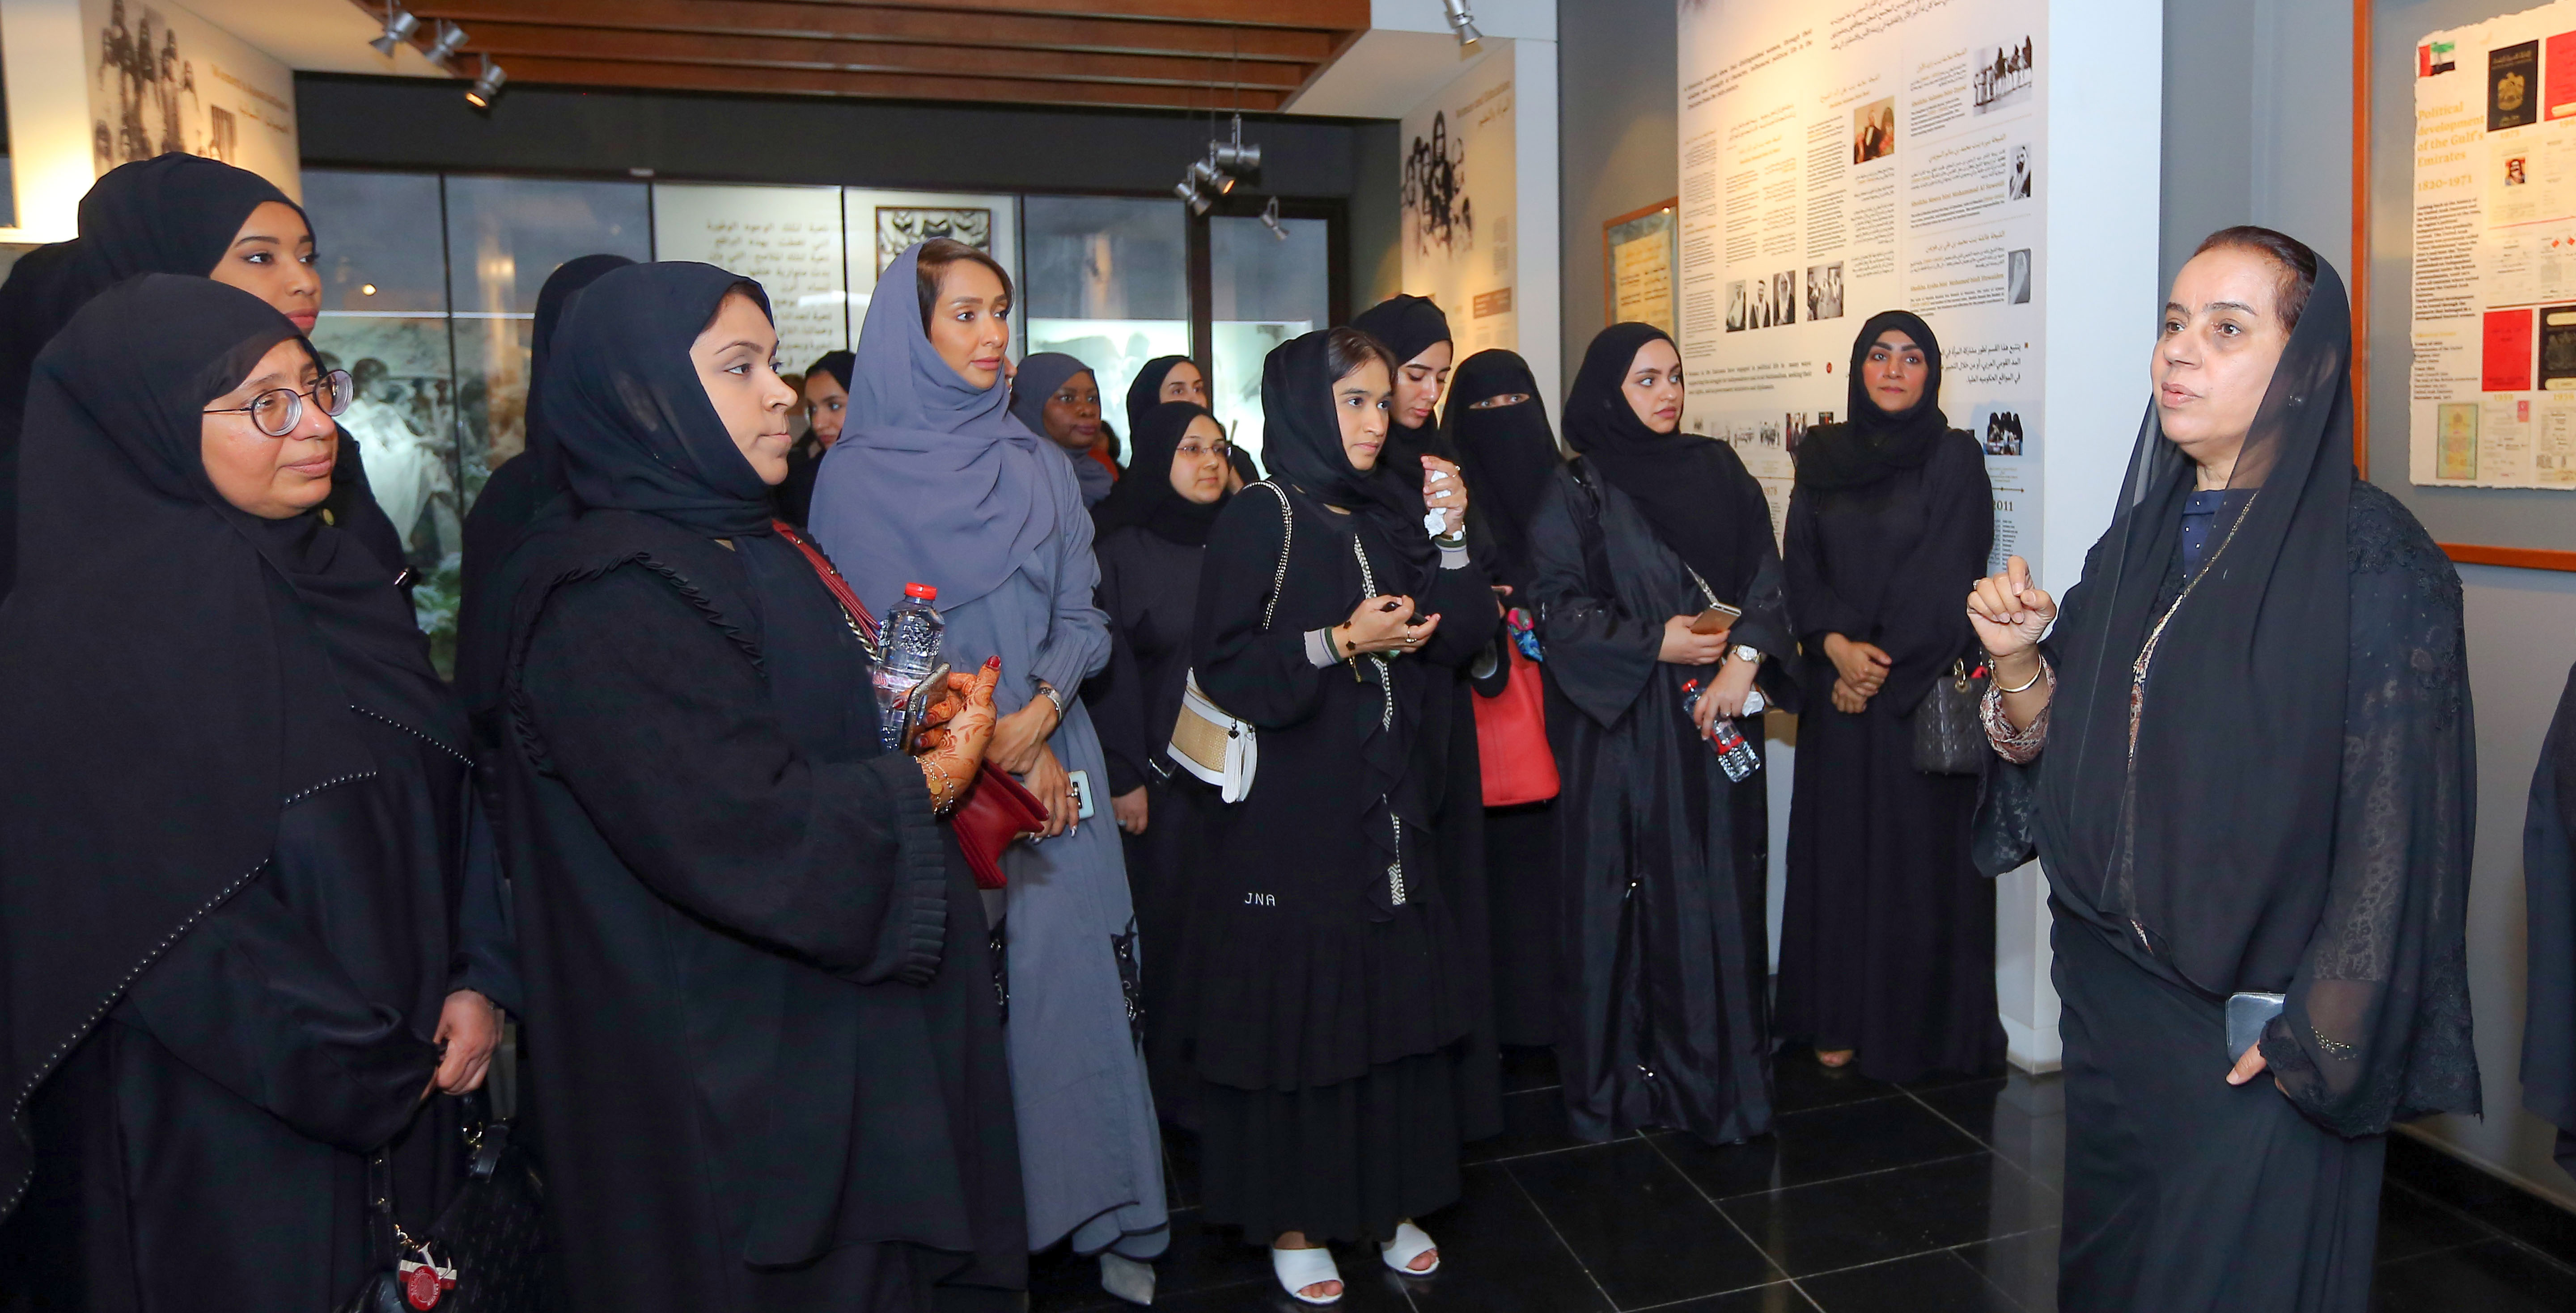 اللجنة النسائية في هيئة كهرباء ومياه دبي تنظم رحلة لموظفات الهيئة إلى متحف المرأة